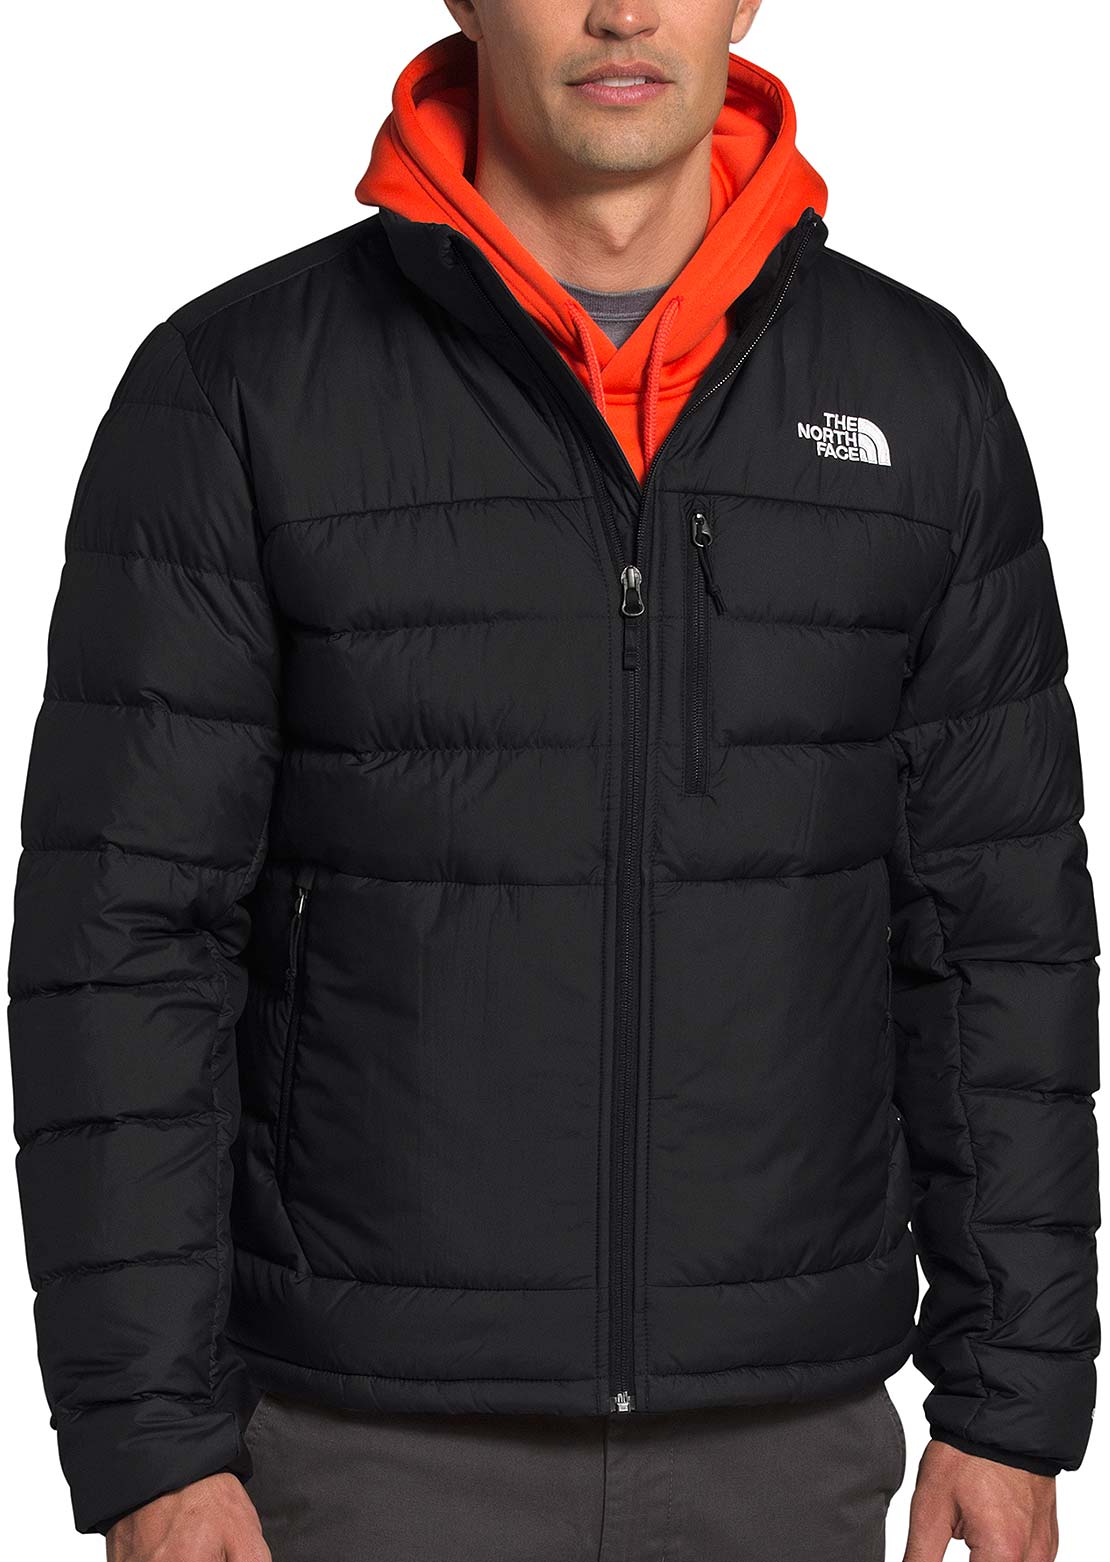 The North Face Aconcagua 2 Jacket (Homme) au meilleur prix